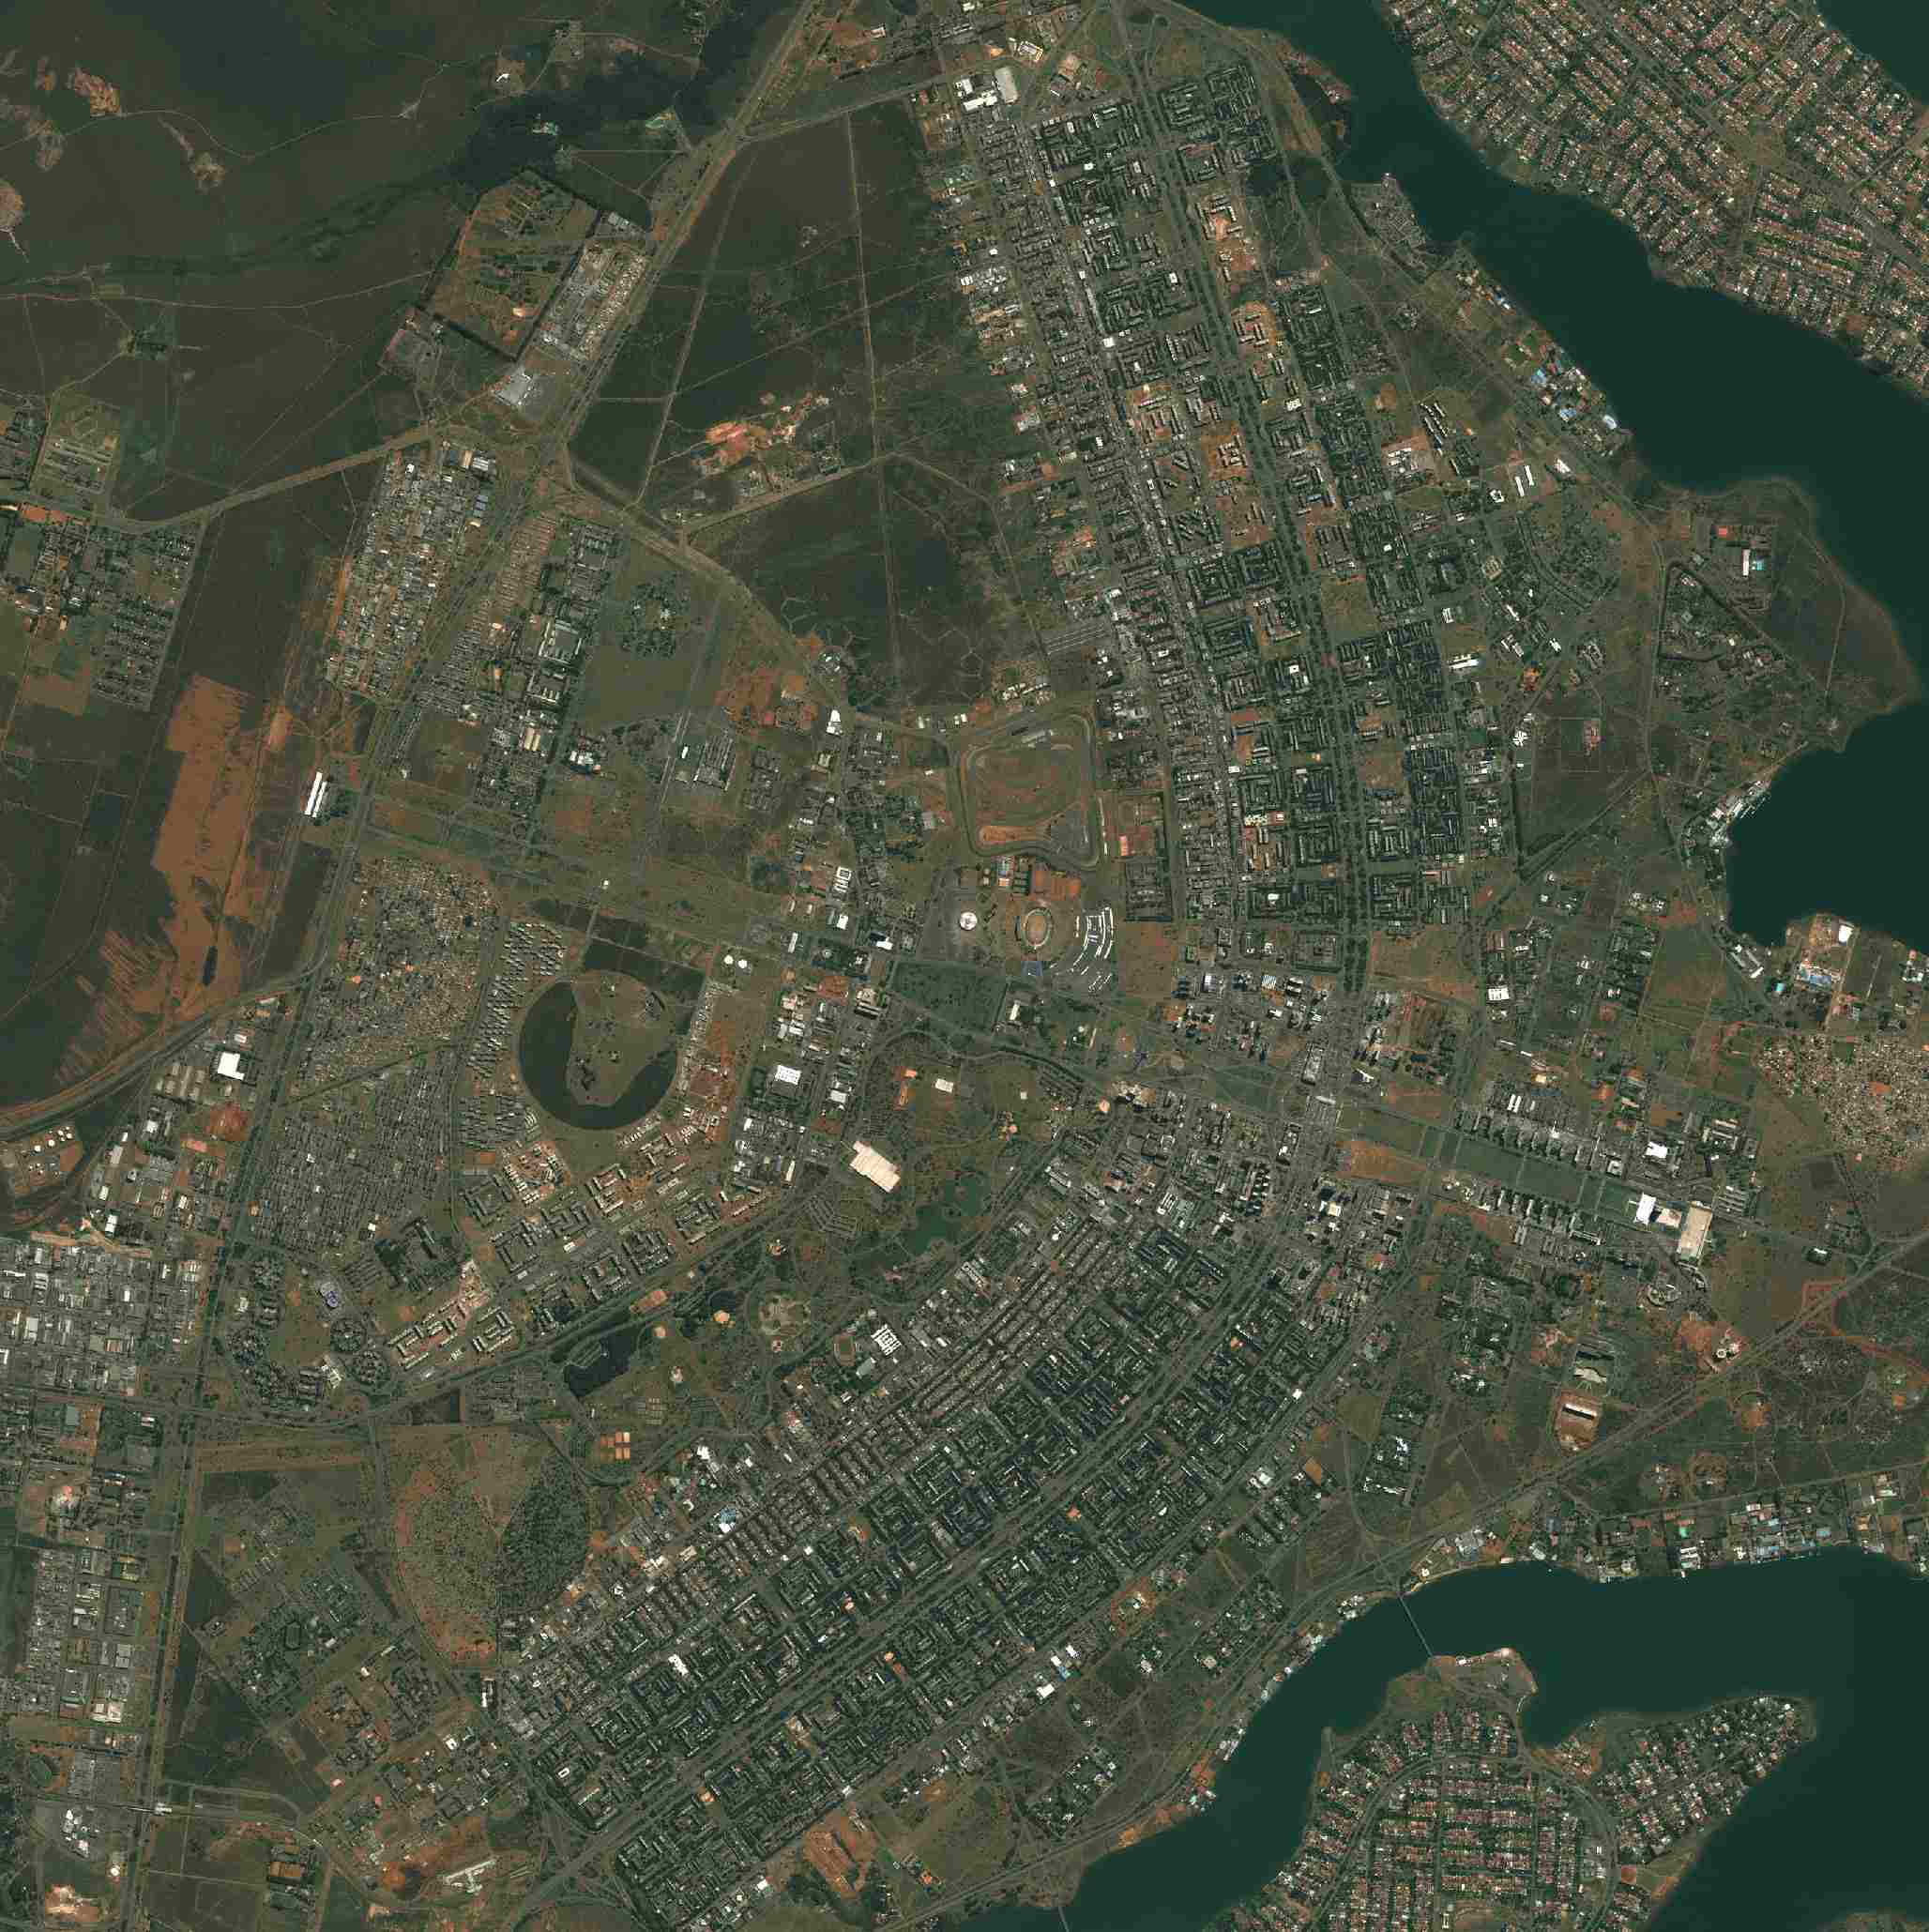 Foto de satélite da capital em 1975 (fonte: NASA)